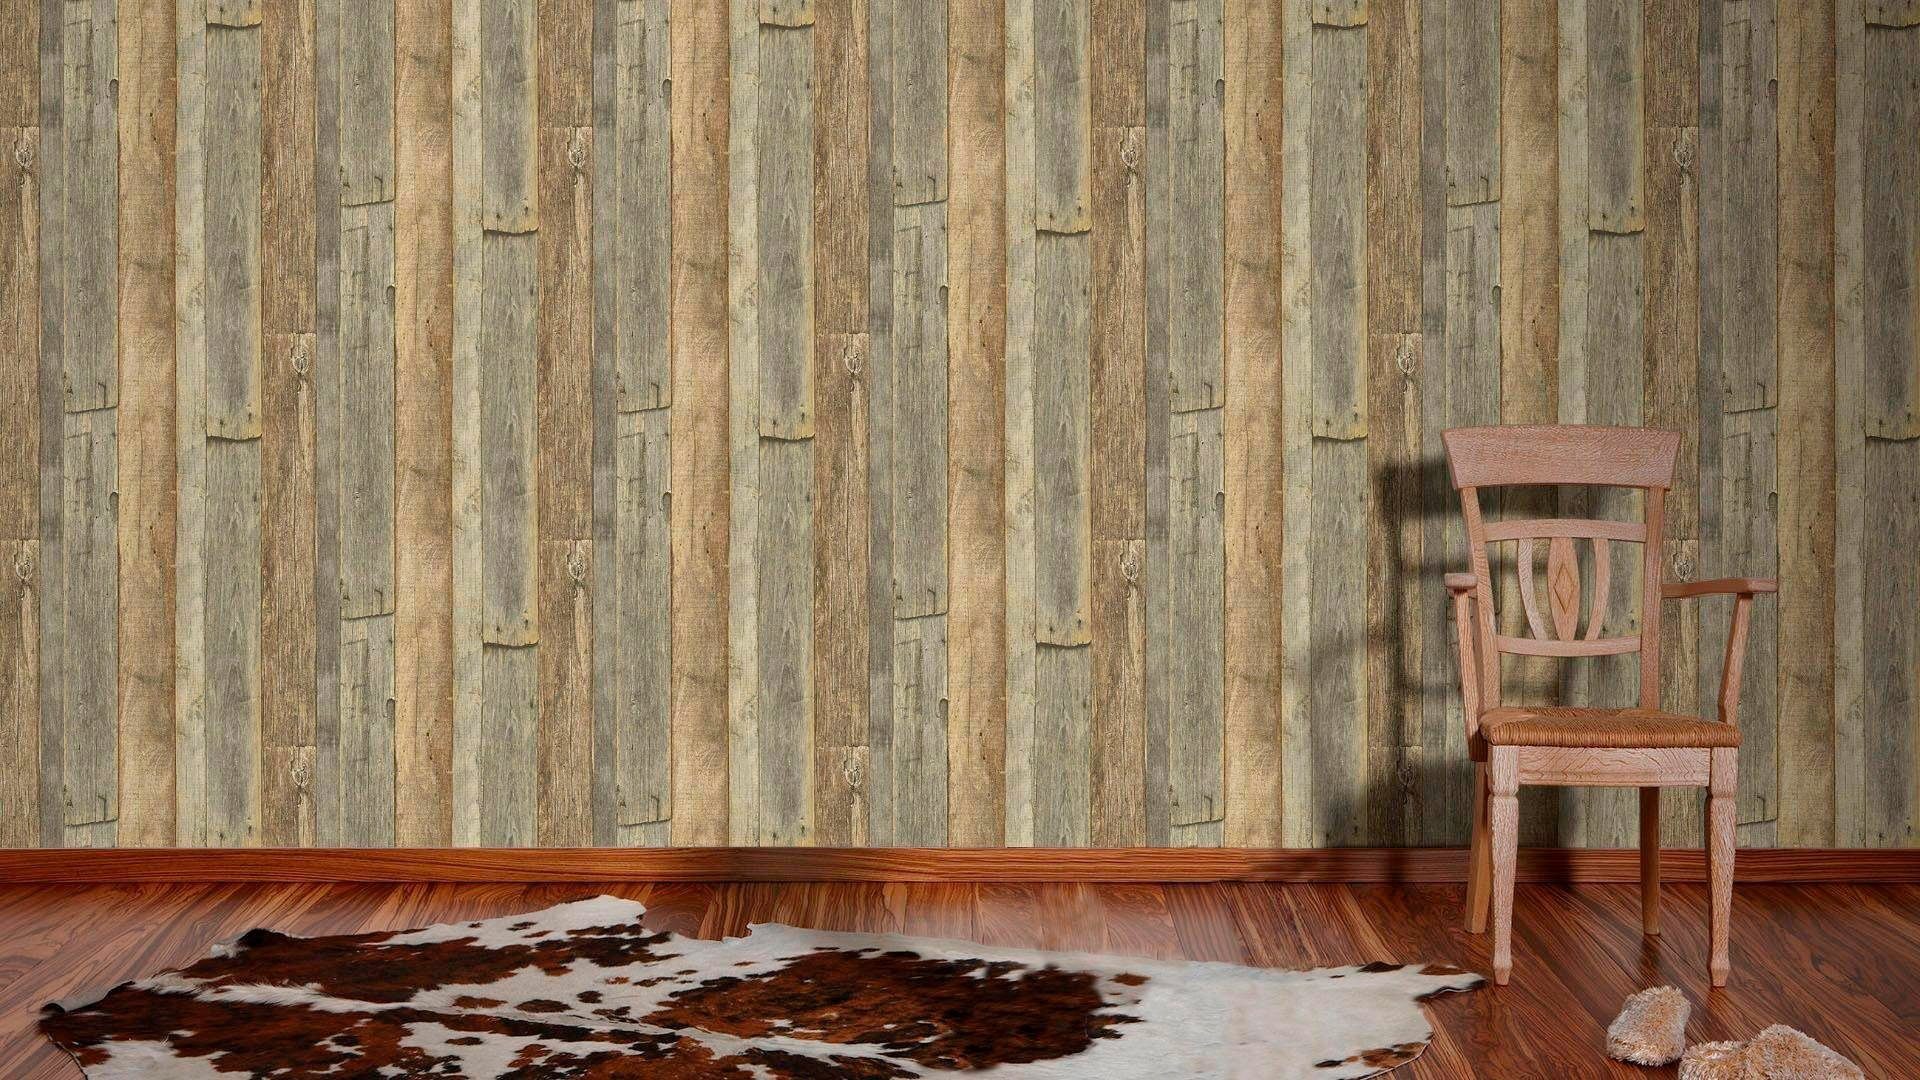 Stone Holzoptik Edition, Holz, matt walls Best living Wood`n leicht of 2nd grau/braun Vliestapete strukturiert Tapete